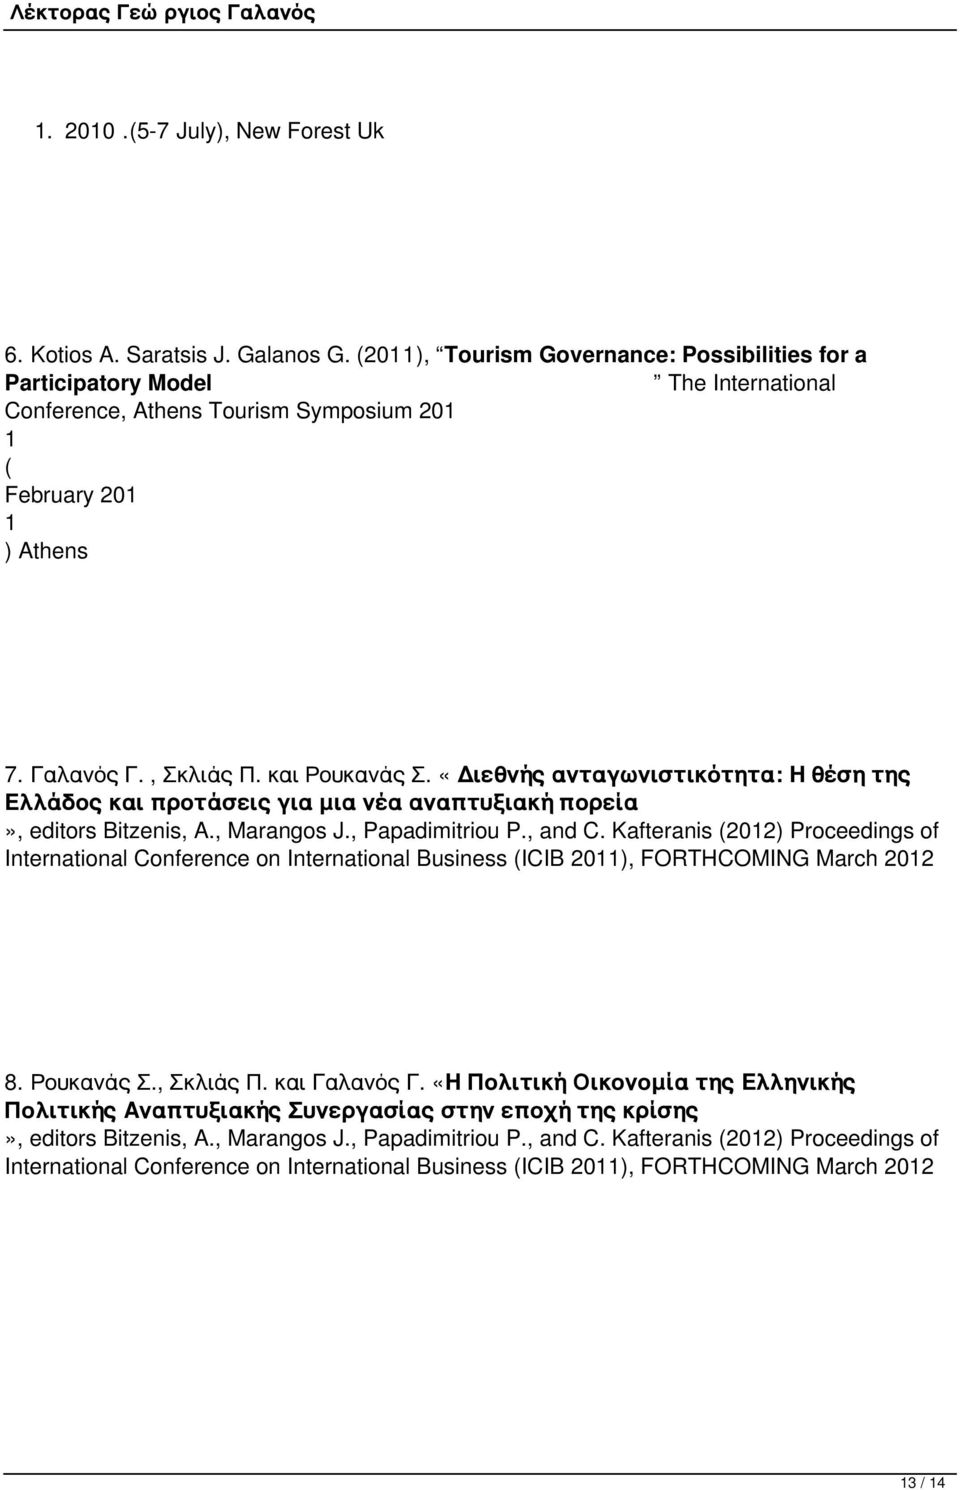 «Διεθνής ανταγωνιστικότητα: Η θέση της Ελλάδος και προτάσεις για μια νέα αναπτυξιακή πορεία», editors Bitzenis, A., Marangos J., Papadimitriou P., and C.